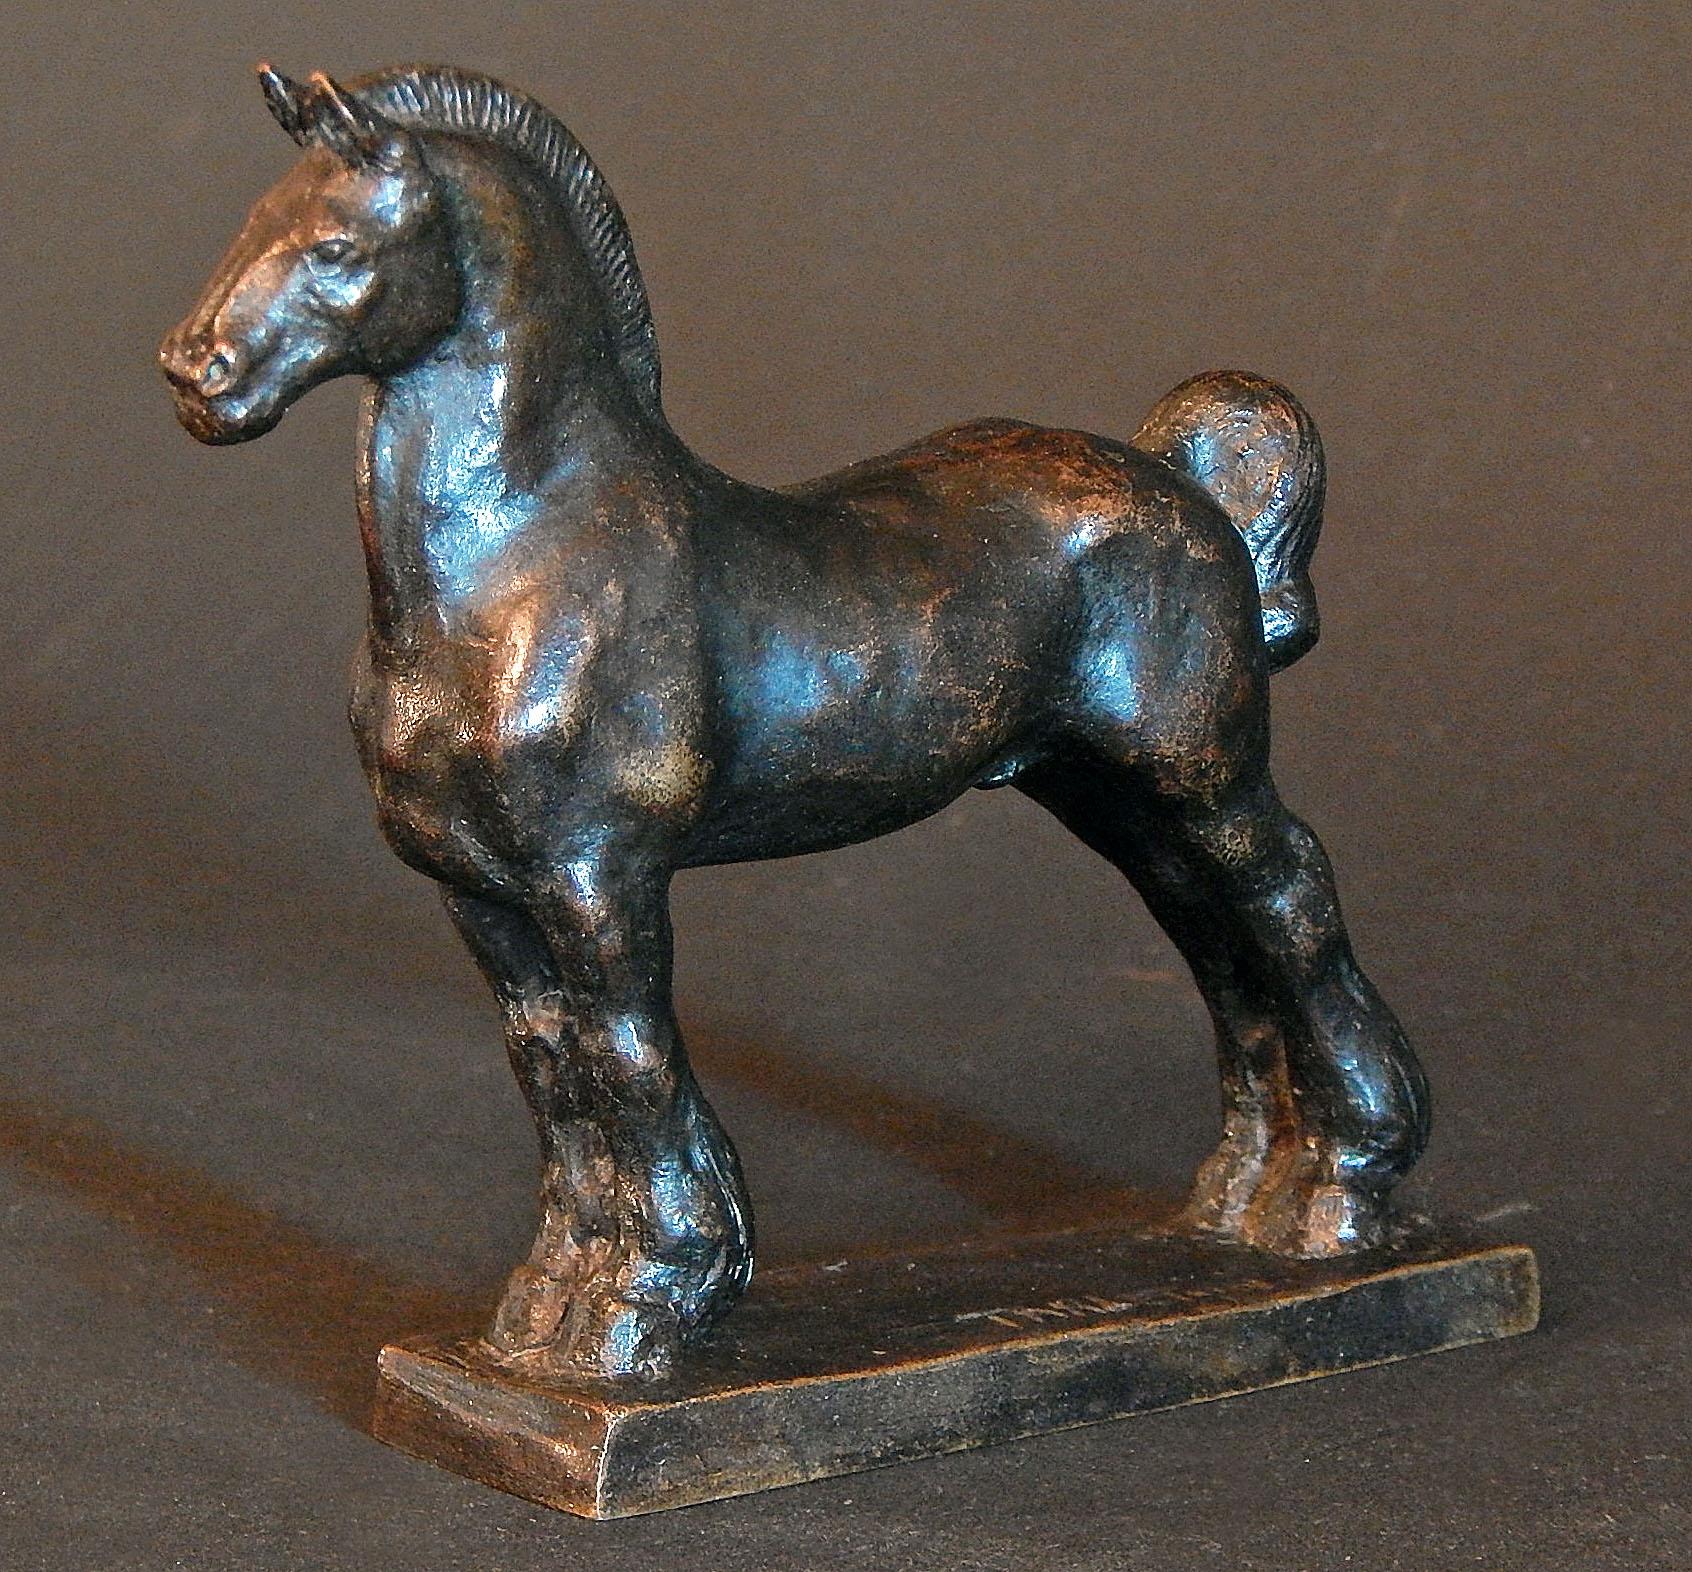 Diese seltene Bronze eines stehenden Pferdes wurde von Mary Tarleton Knollenberg geschaffen und zeigt den Schweif des Pferdes in einem klassischen Schlammknoten, der von Reitern verwendet wird, um den Schweif des Pferdes von Schmutz und Schlamm auf